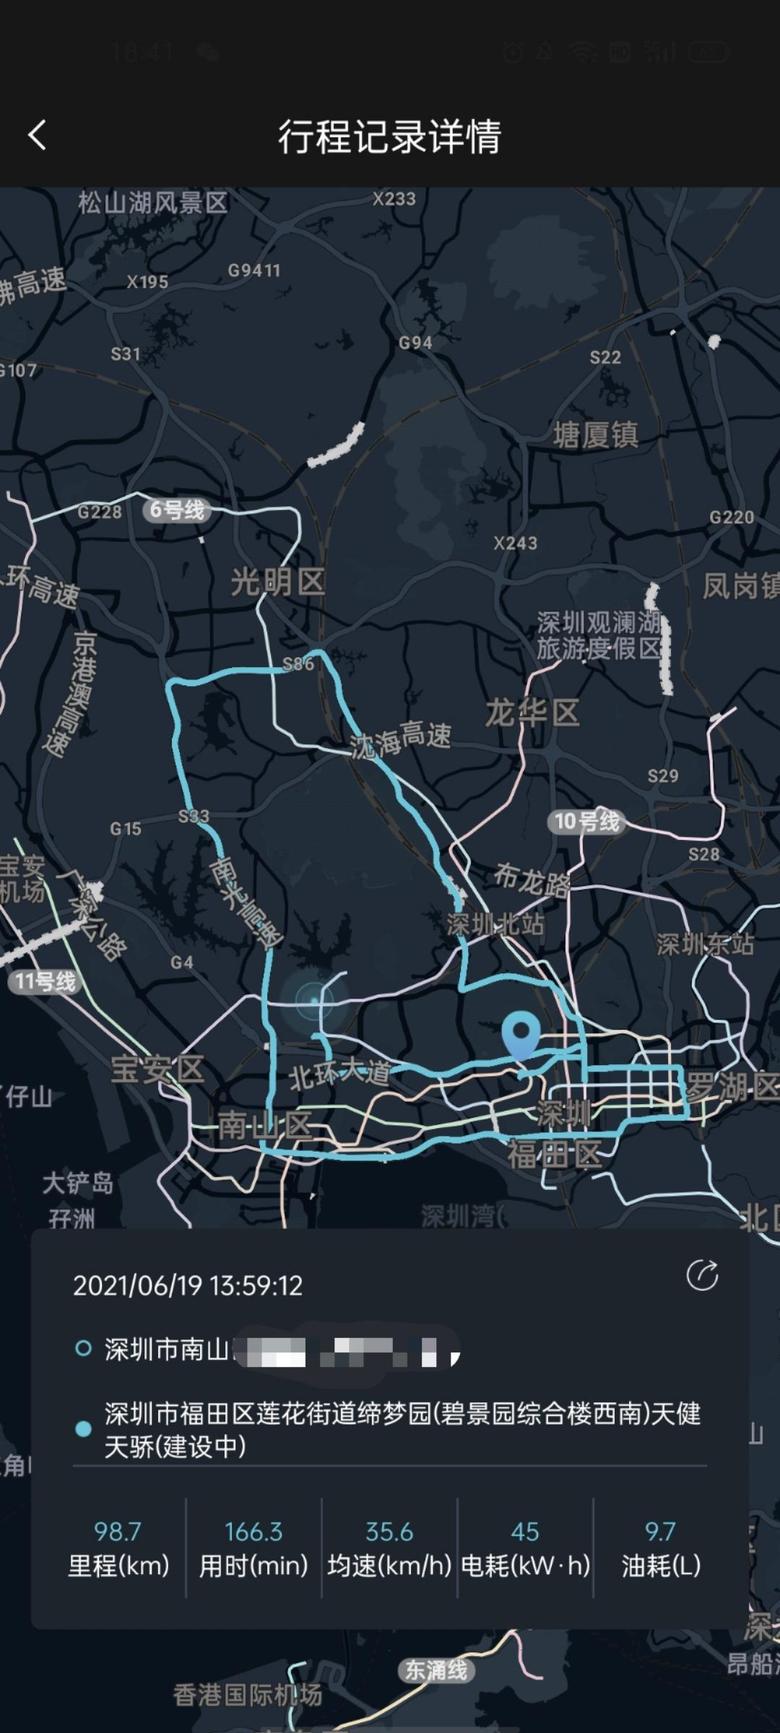 标致508l phev 今天深圳逛了一大圈，有普通城市路况，快速路况，高速路况。大家自行感受一下。